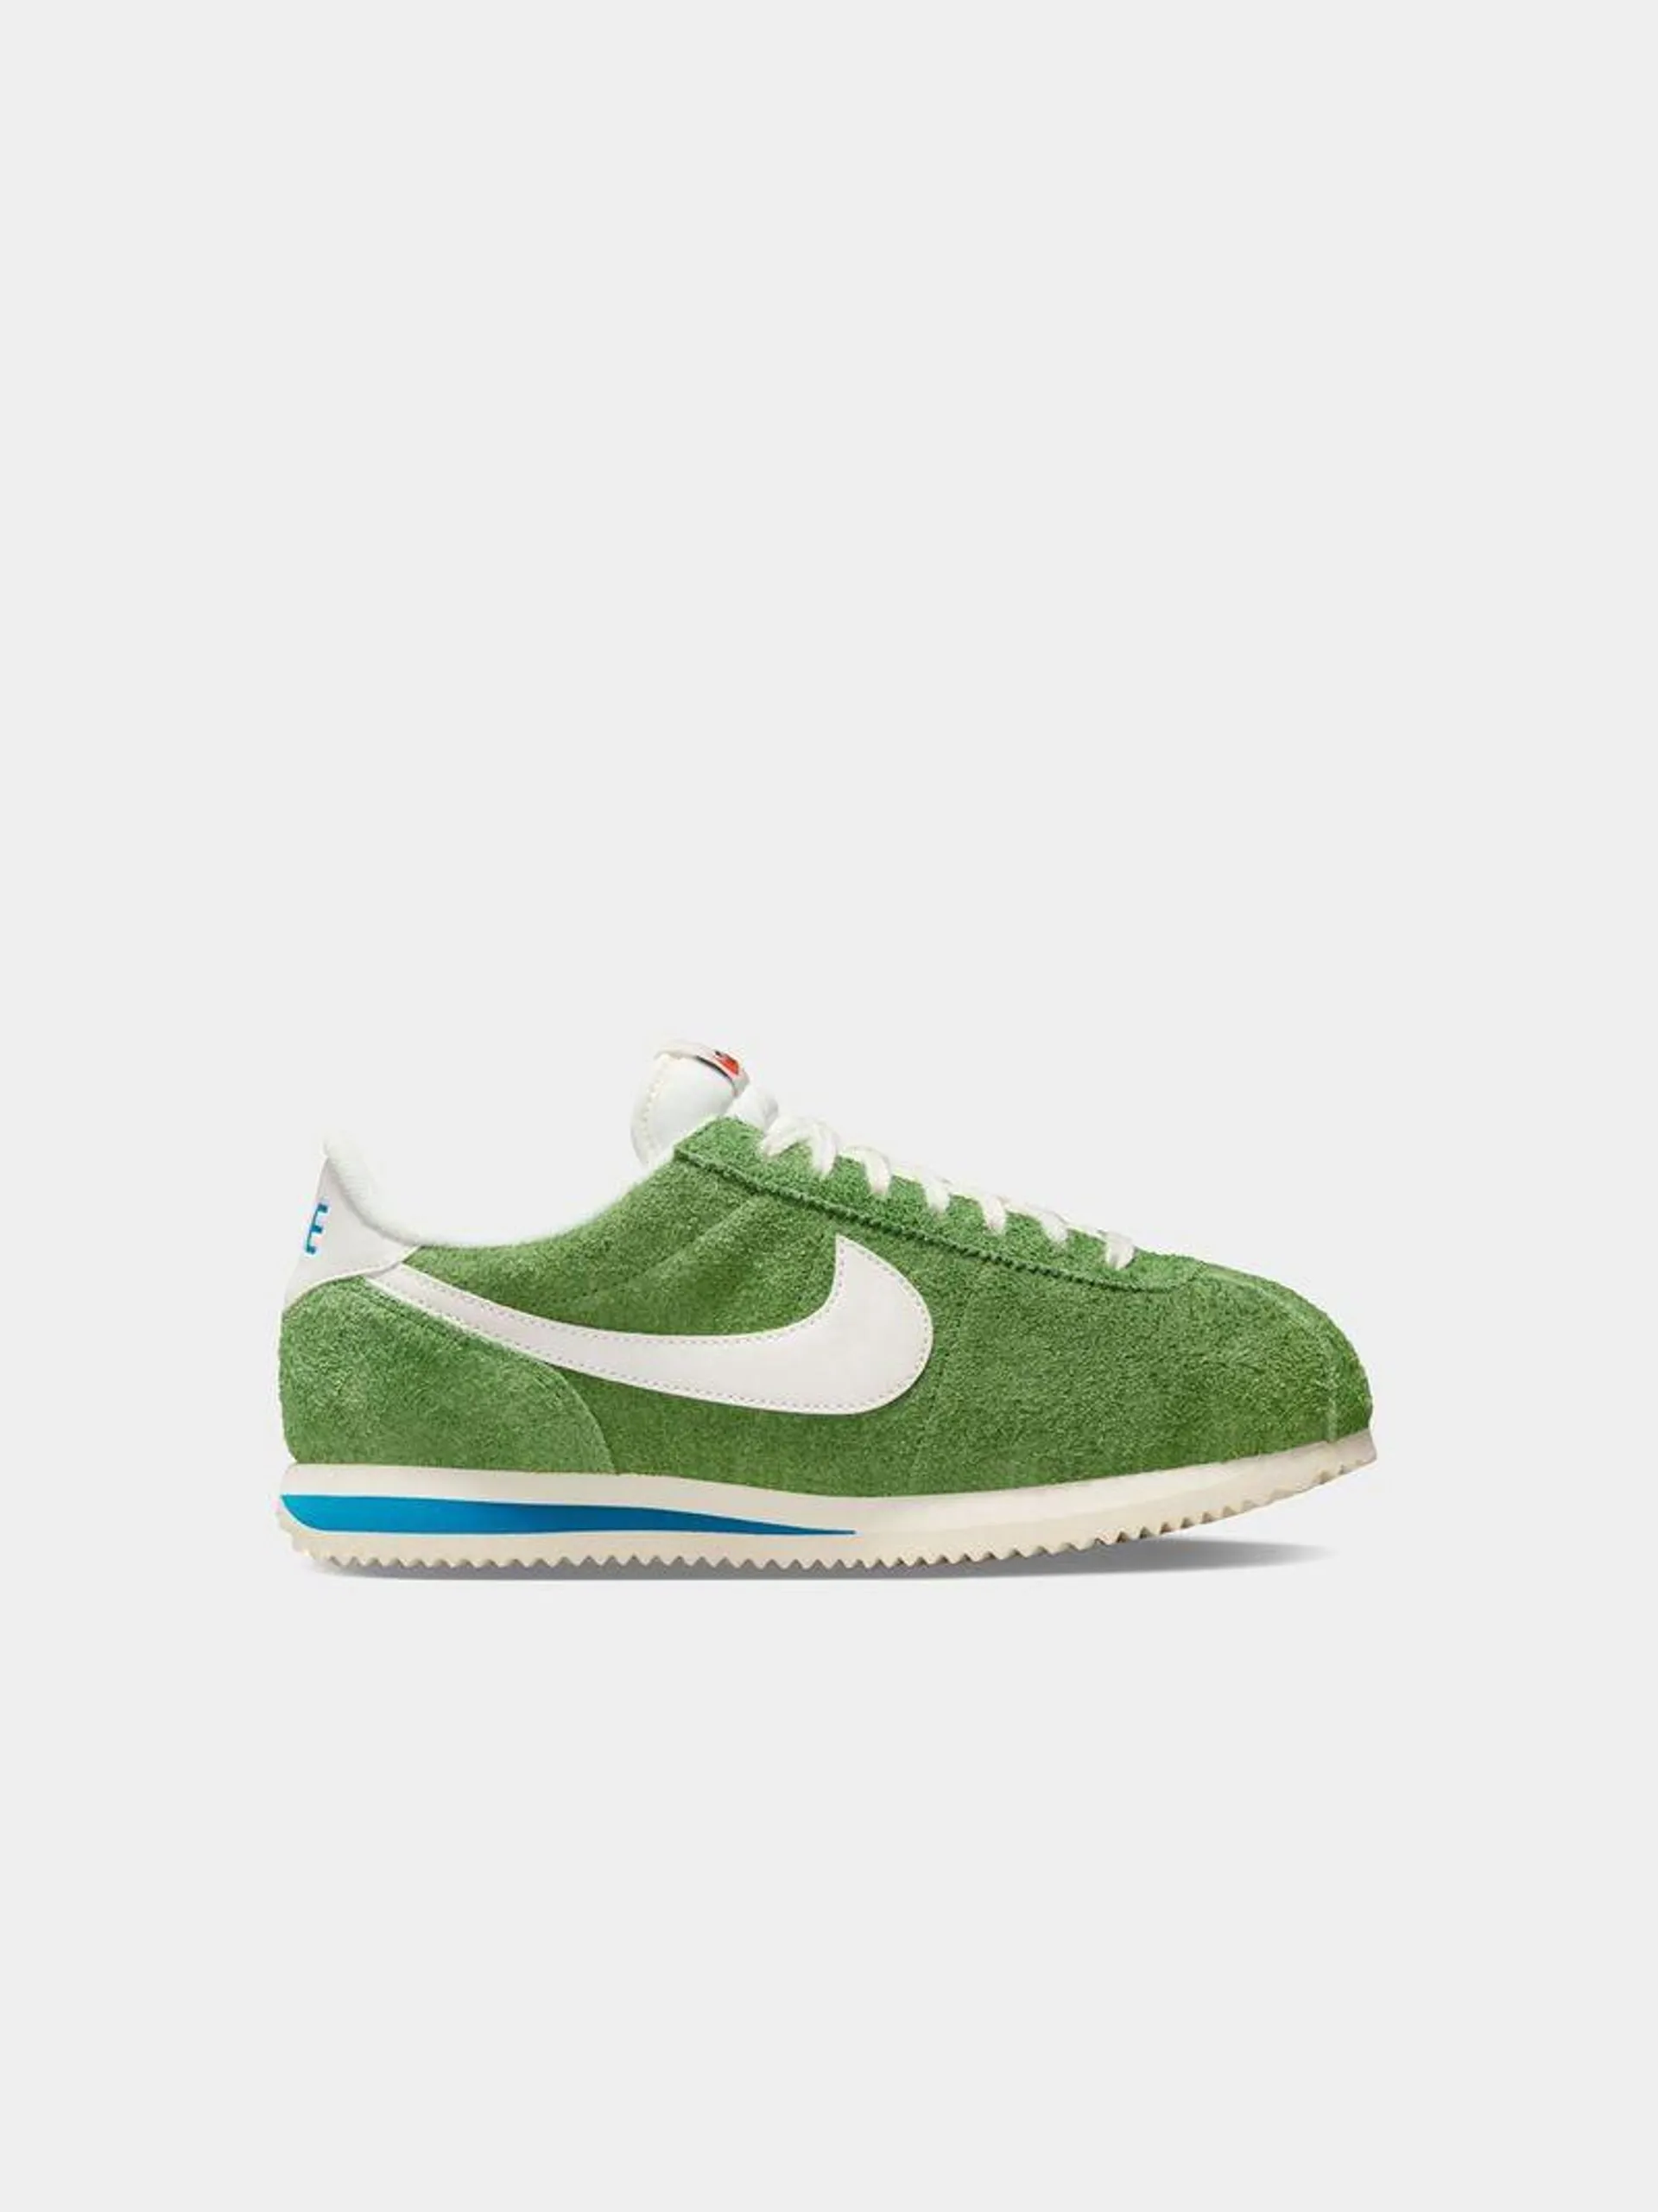 Nike Women's Cortez Green Sneaker